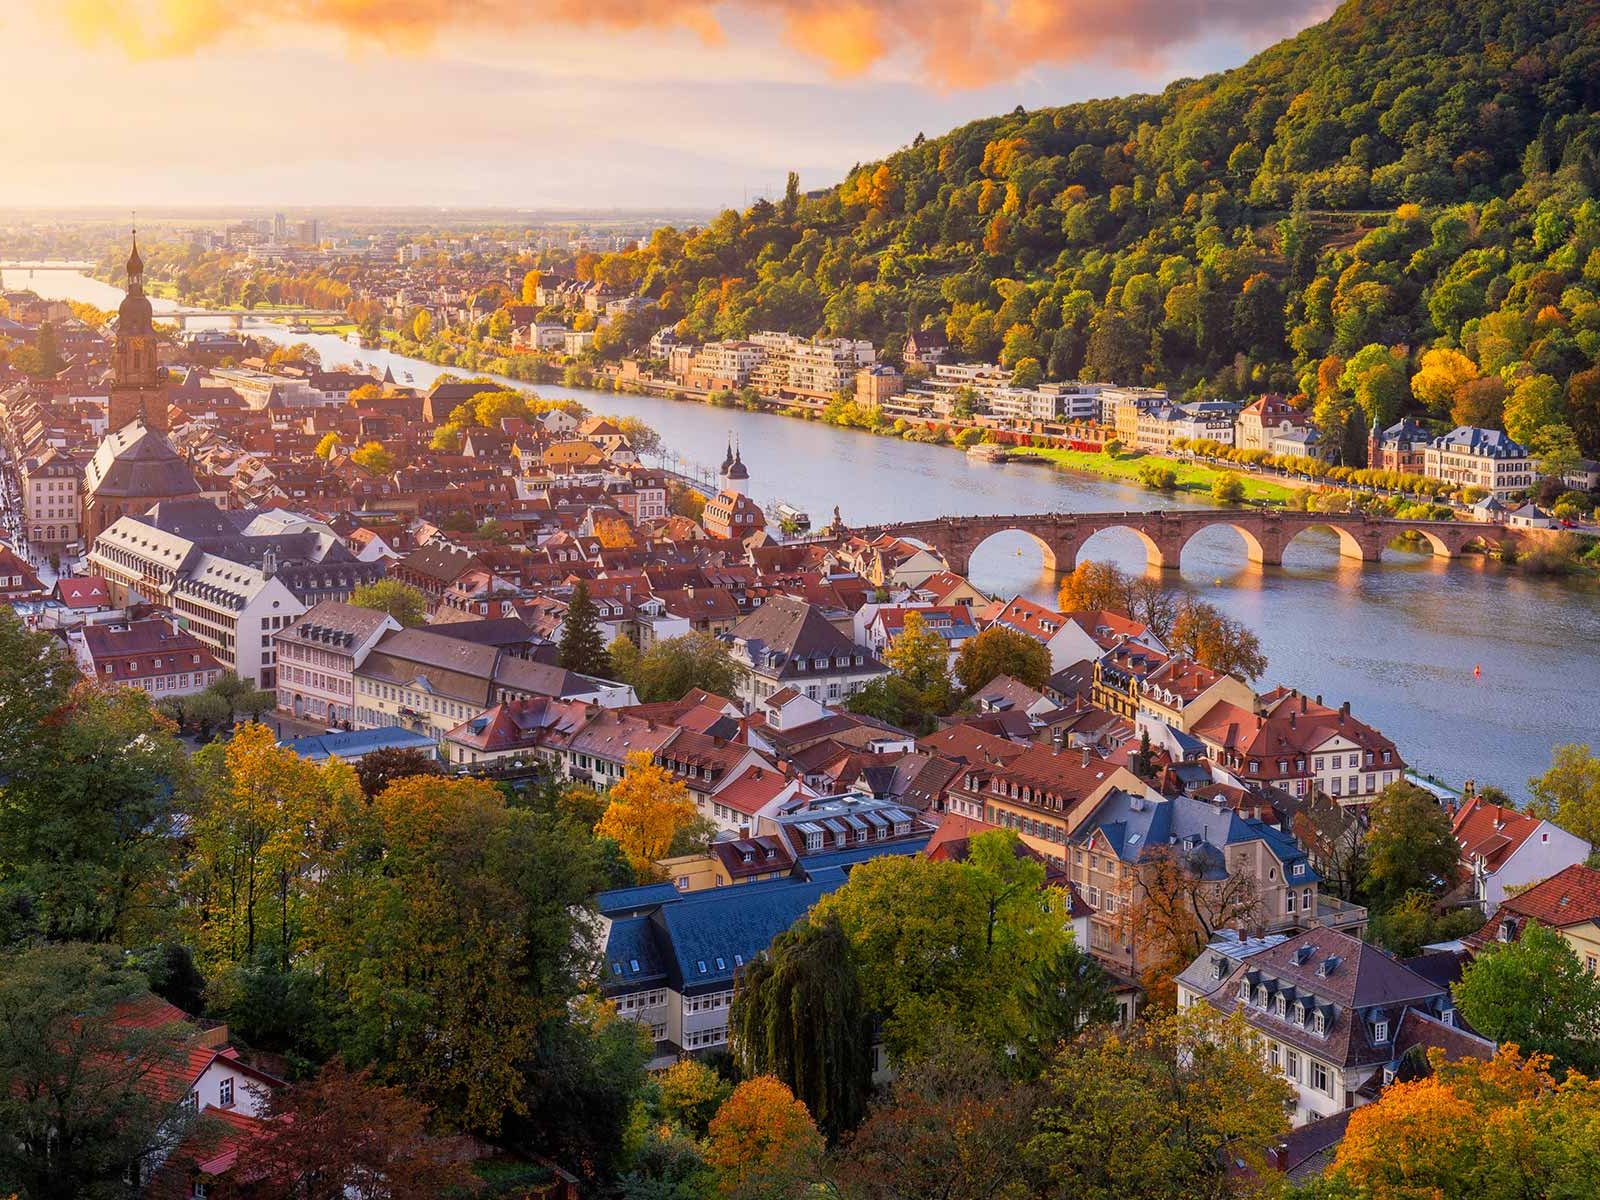 Heidelberg ist nicht nur schön, sondern bietet auch allerhand kulinarische Highlights.&nbsp;